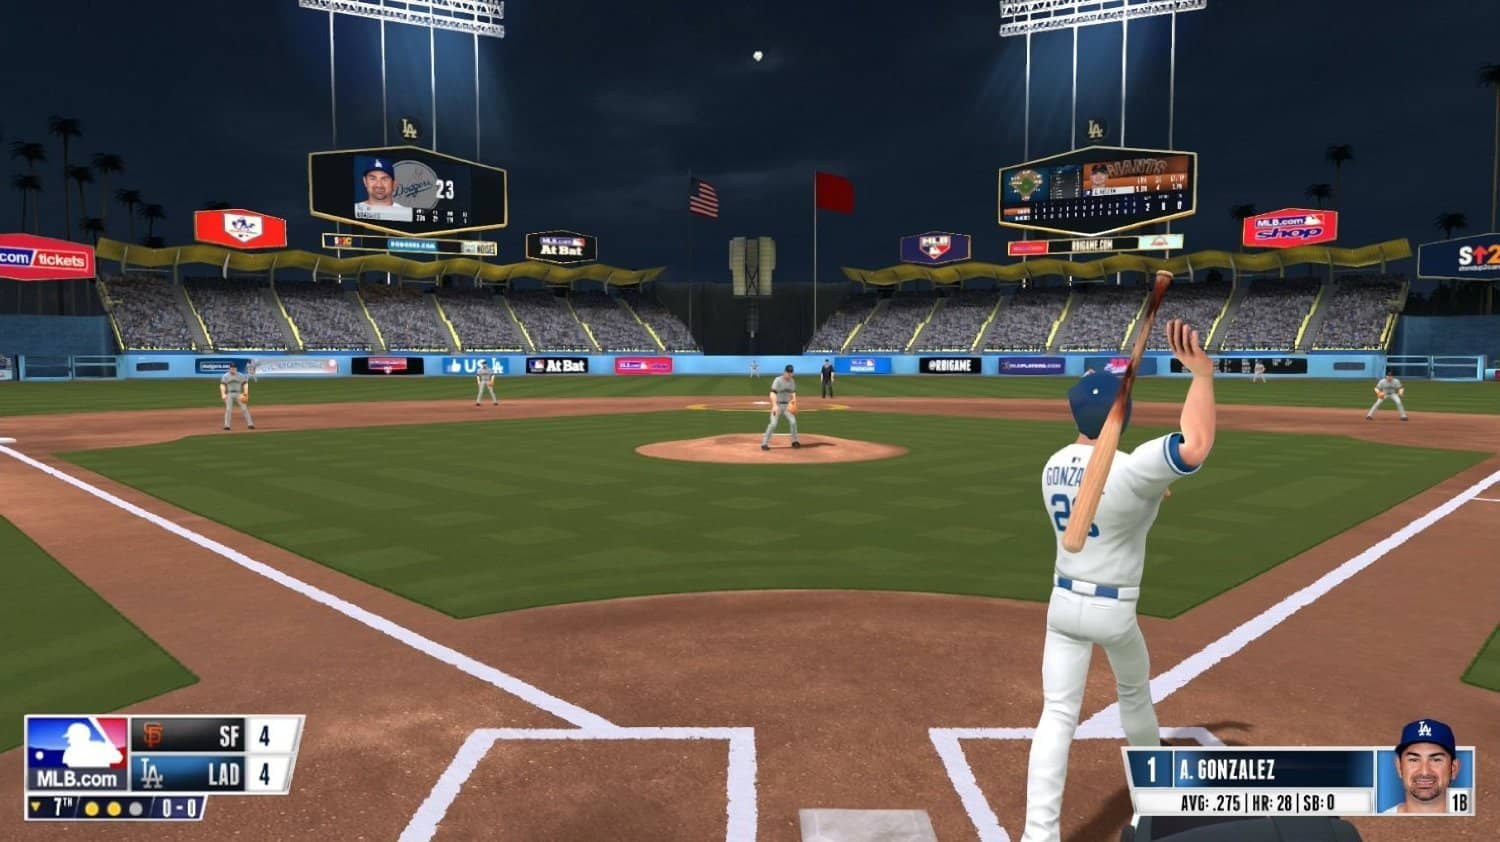 RBI Baseball 2016 - Xbox One